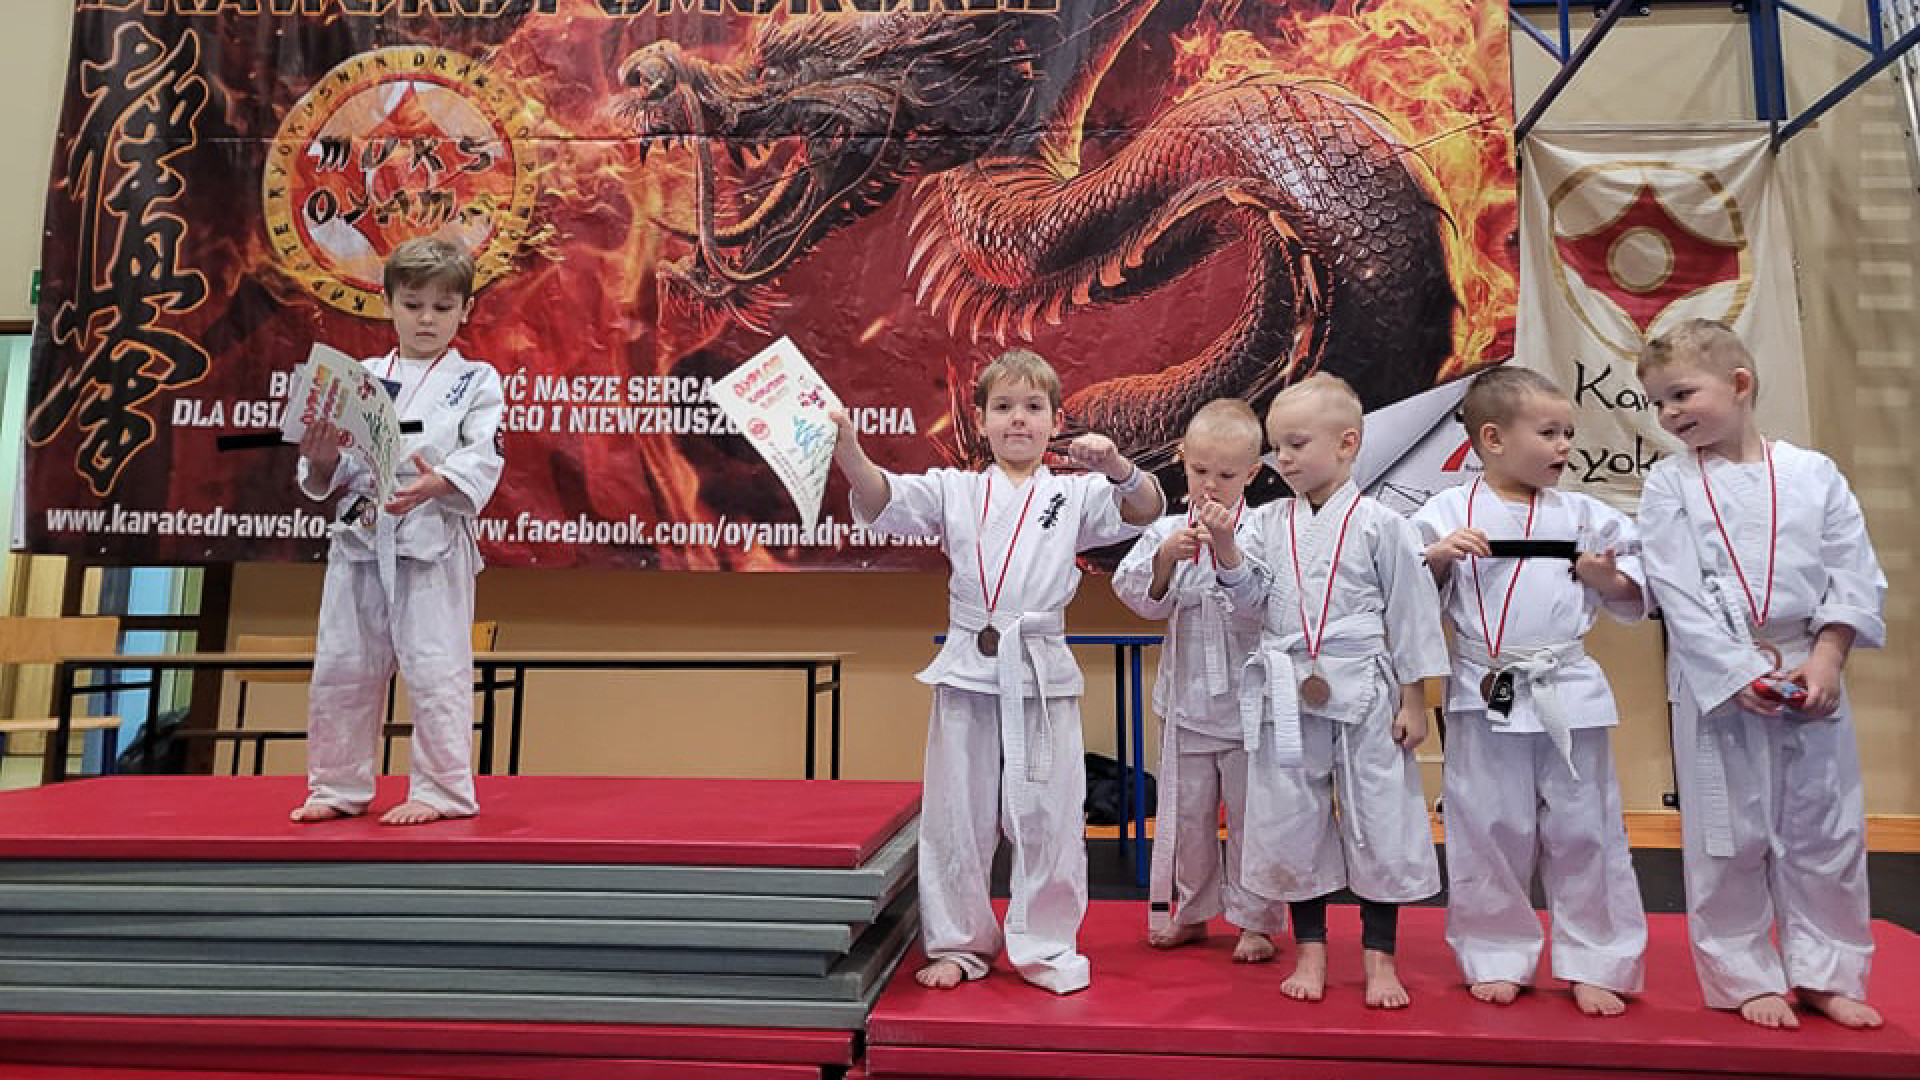 Karatecy z Drawska zorganizowali Mikołajki oraz Mikołajkowy Turniej Karate Kyokushin